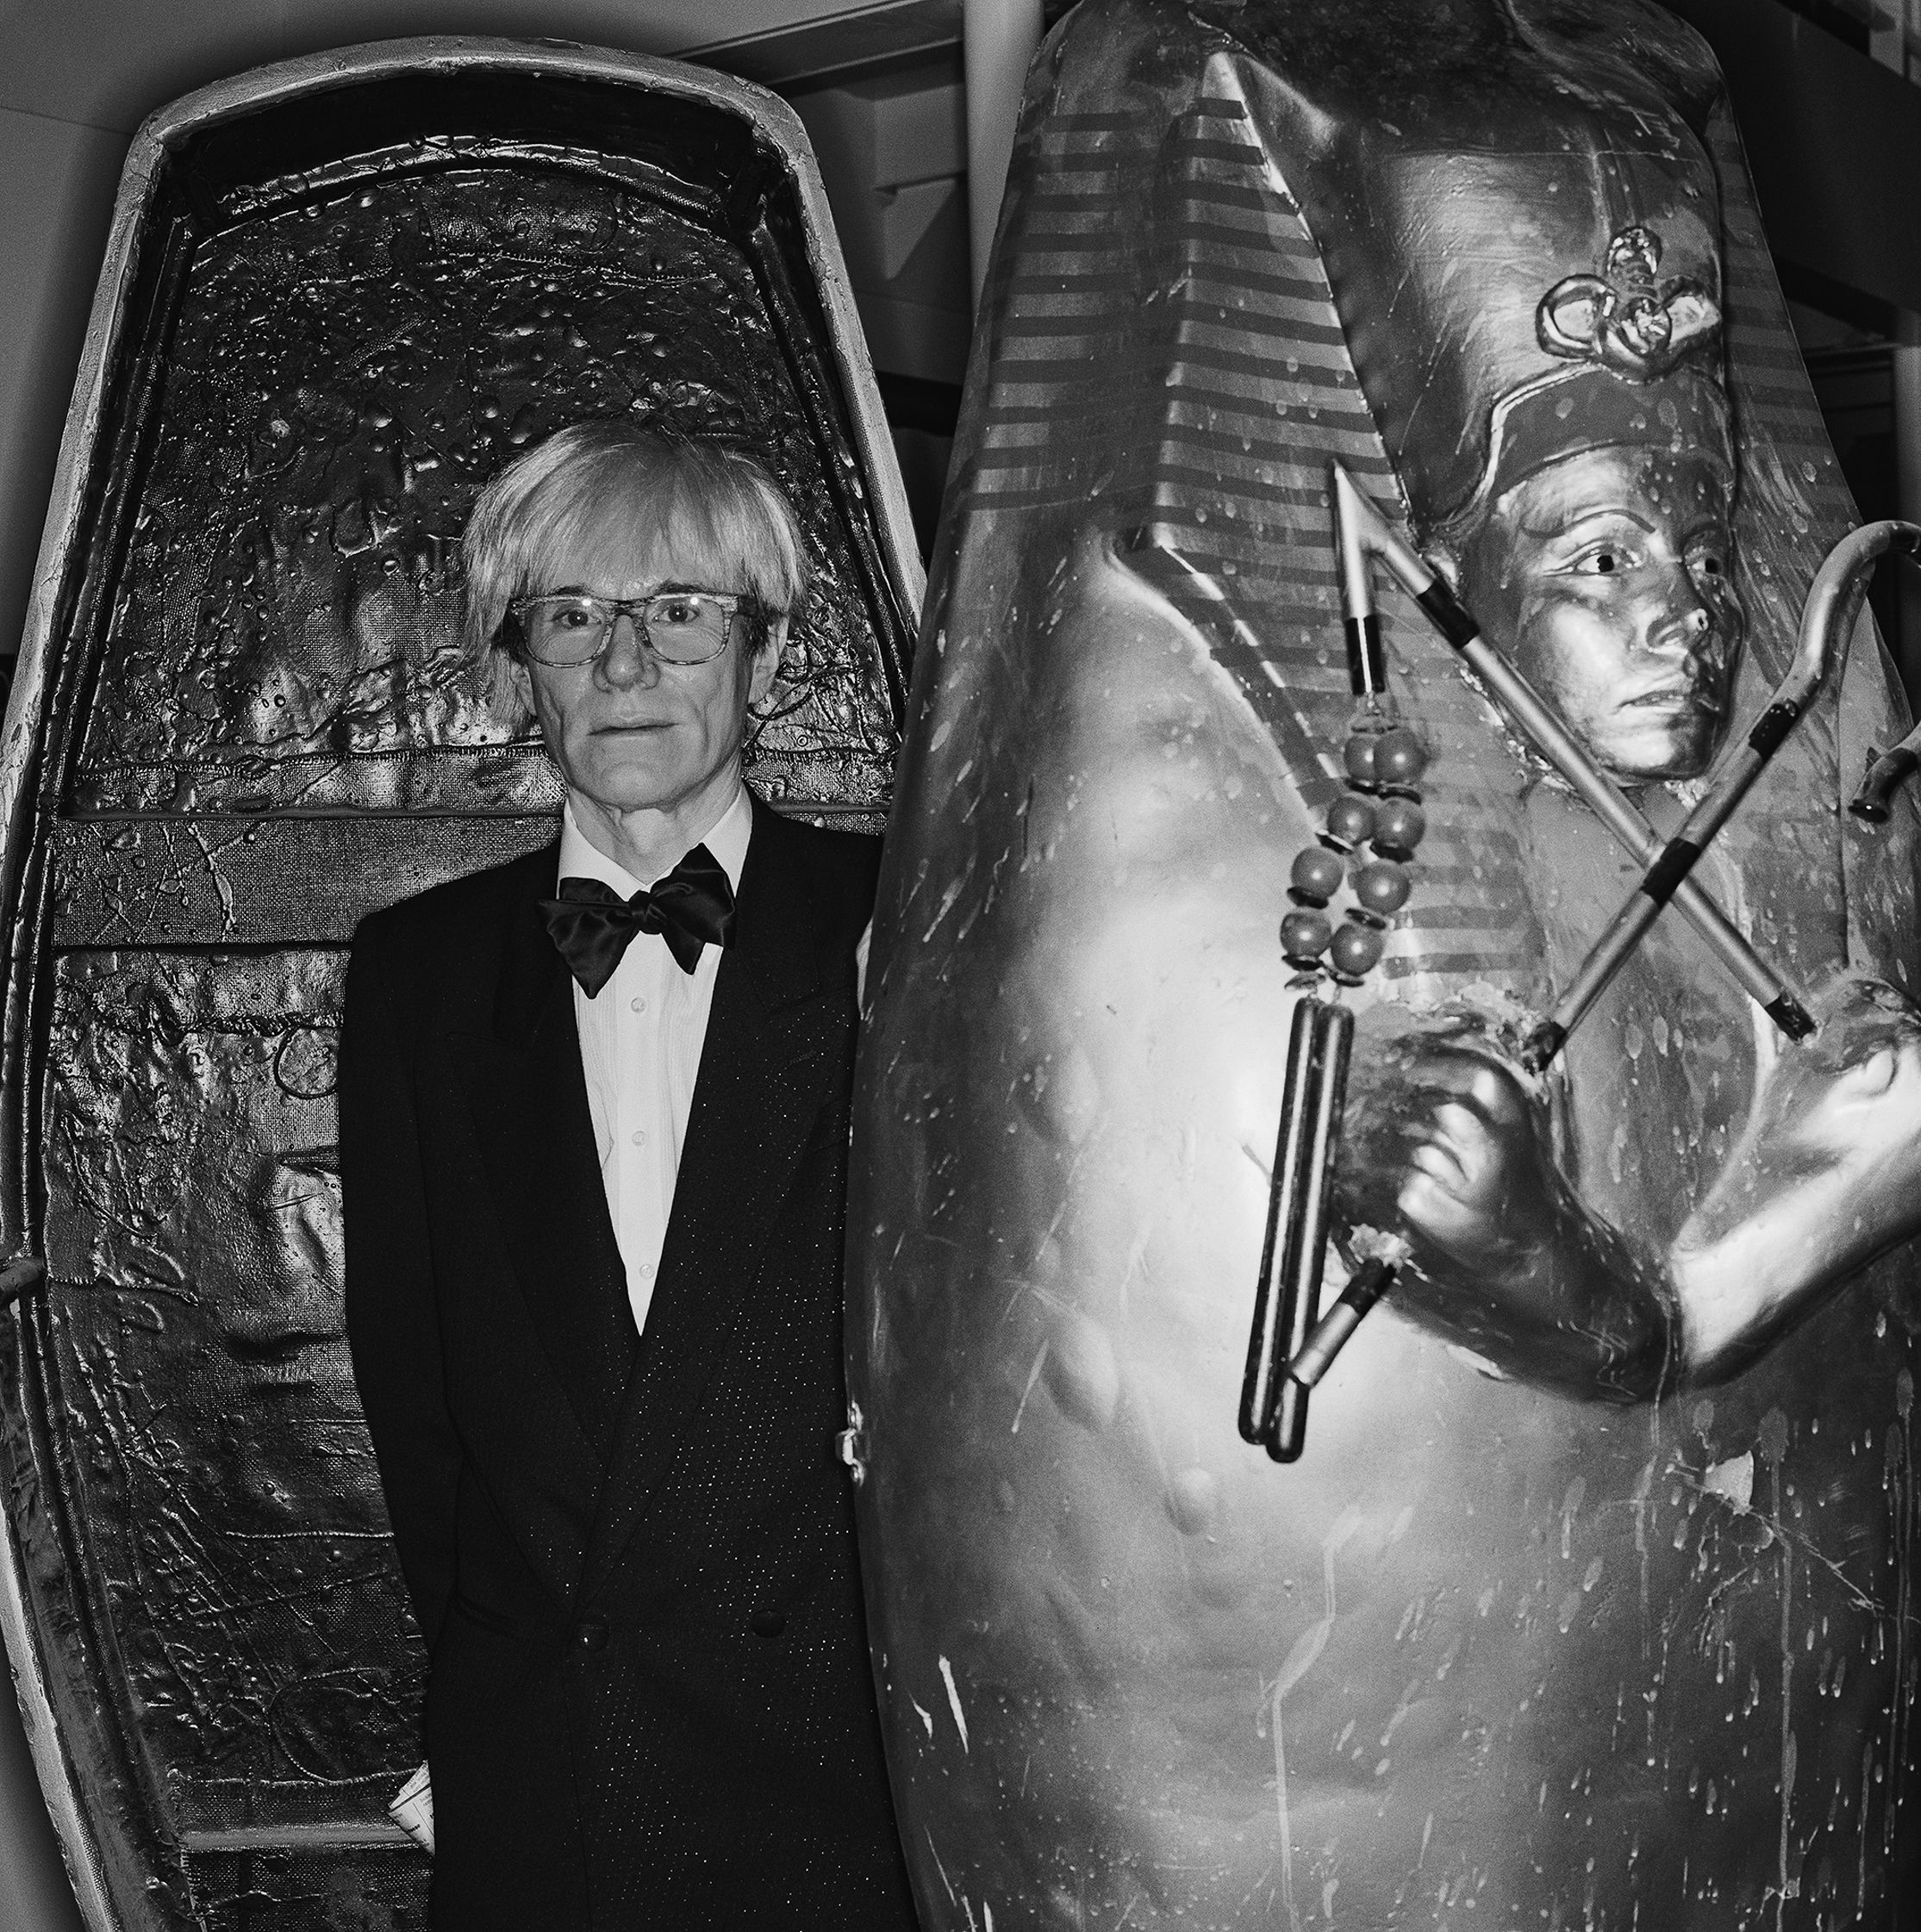 Warhol.jpg